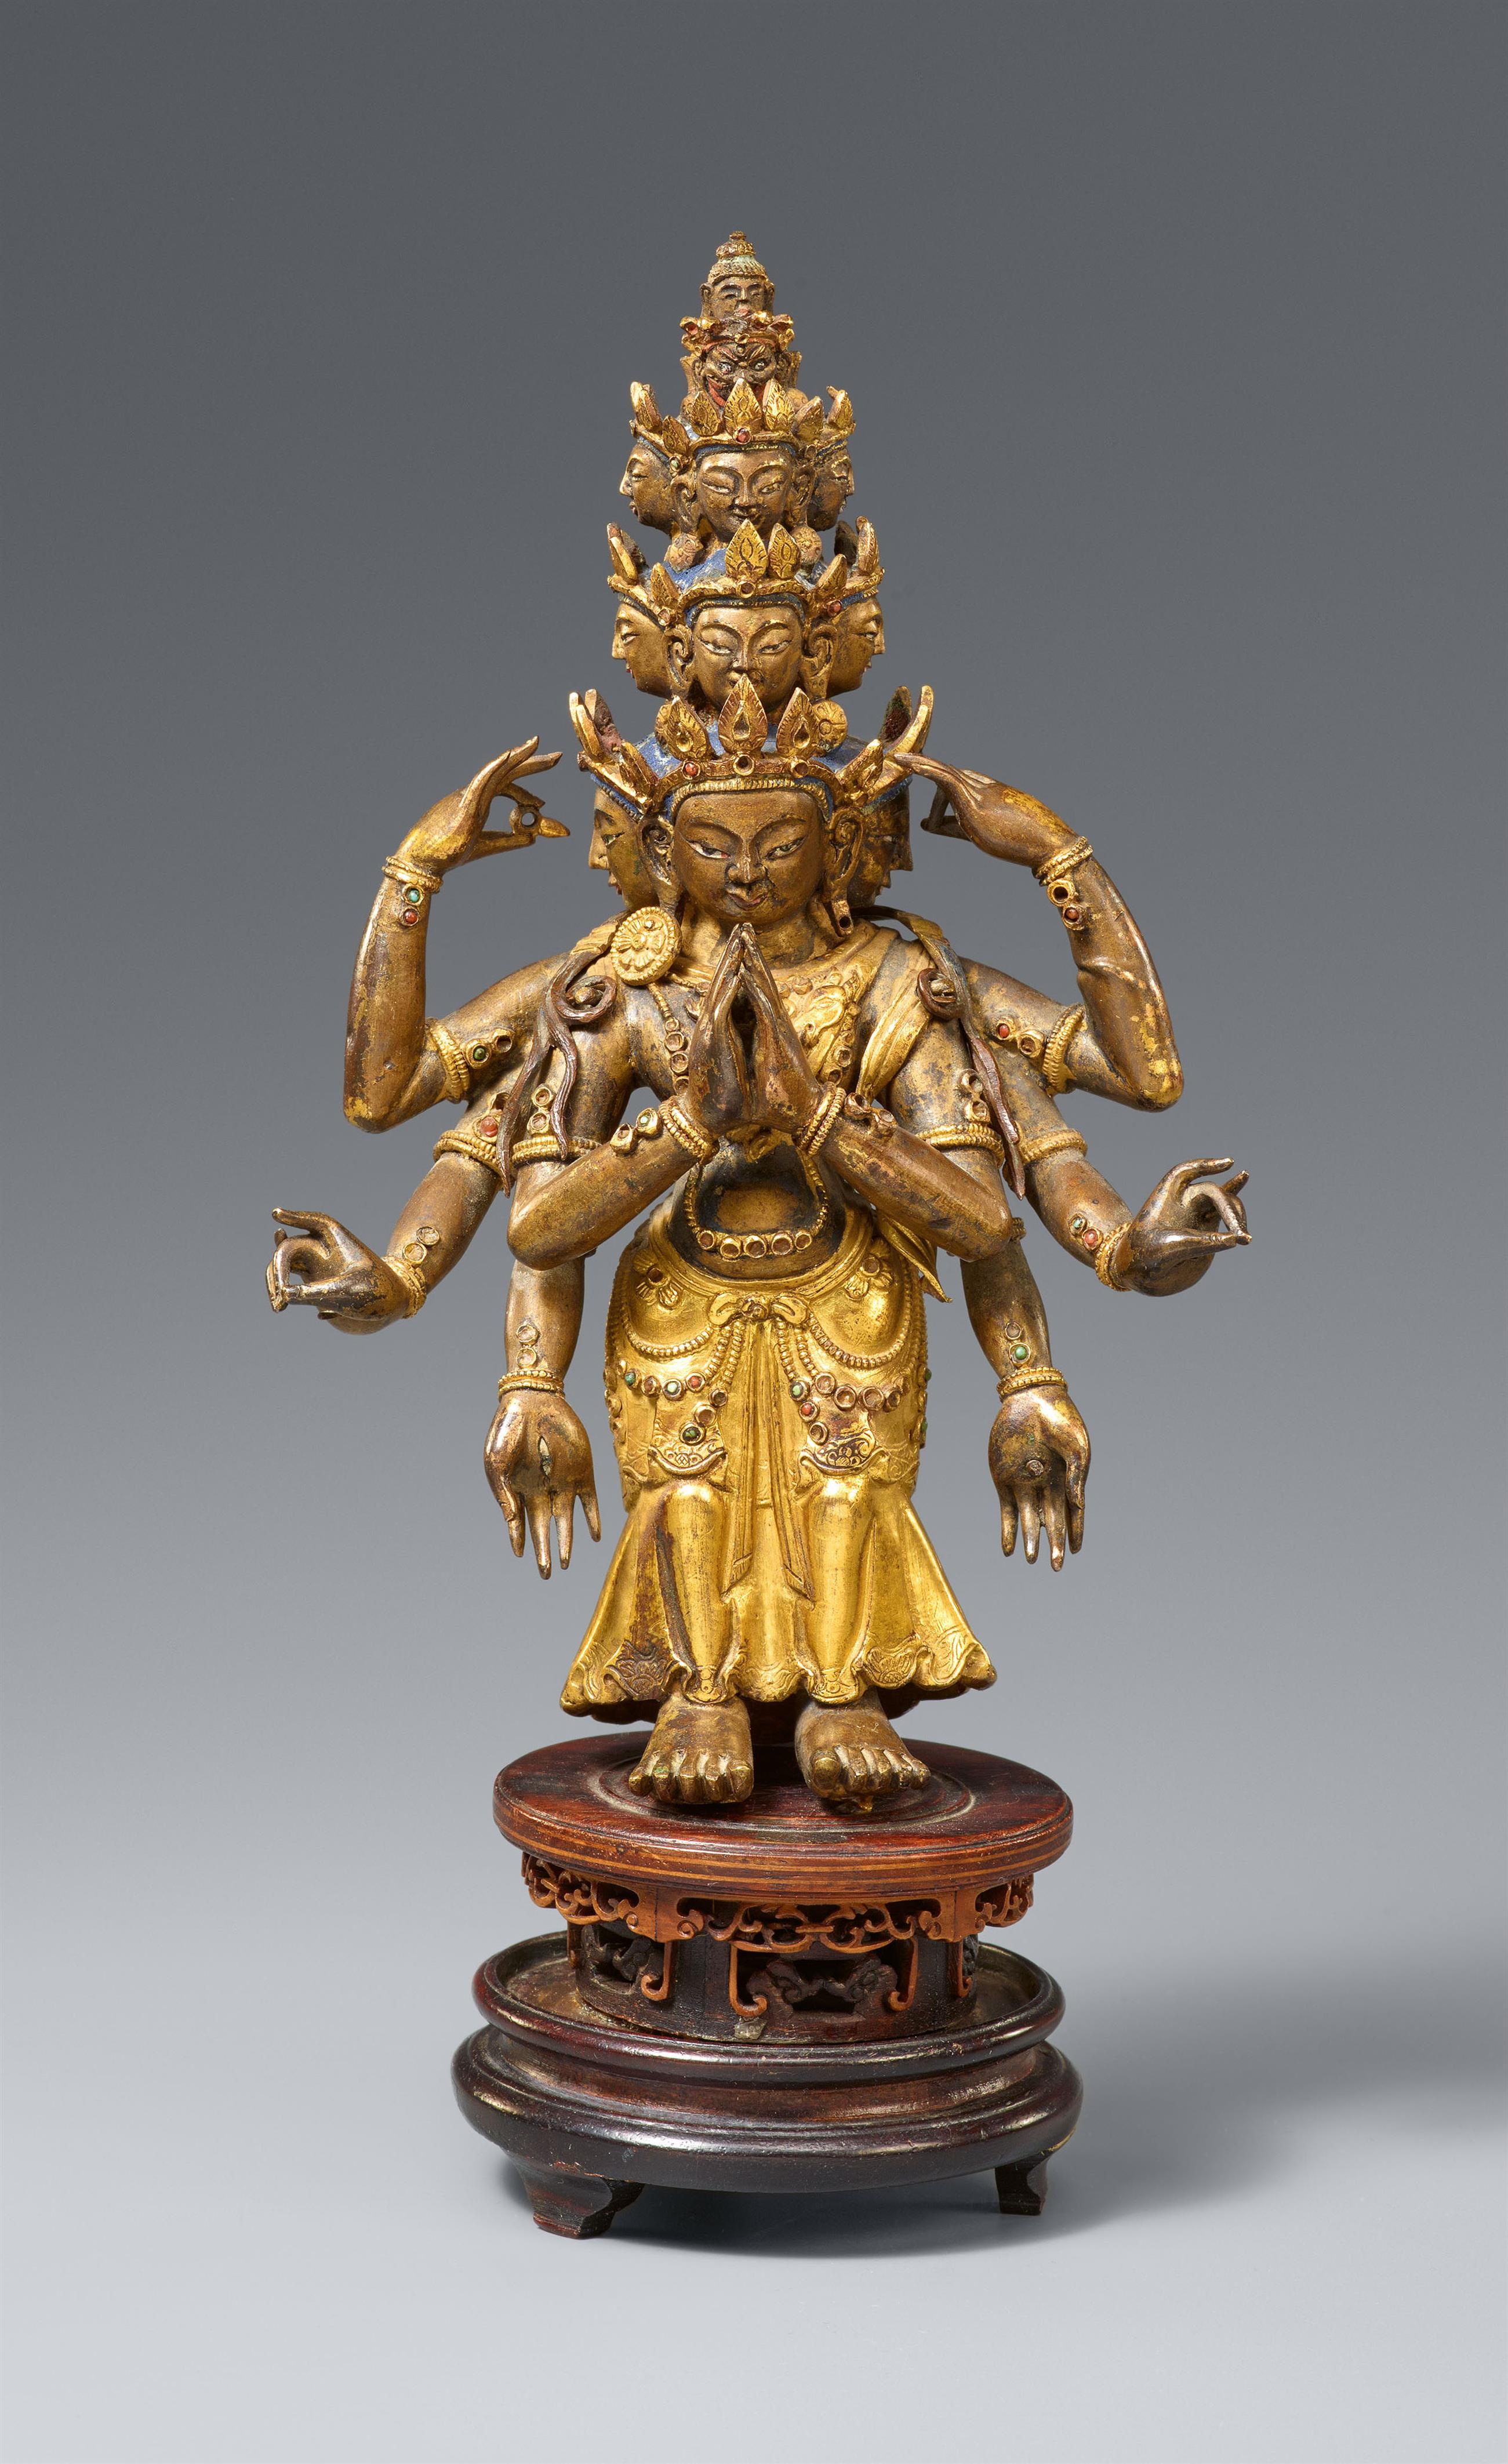 Ekadasamukha-Avalokitesvara. Vergoldete Bronze. Sinotibetisch.  18. Jh. - image-1